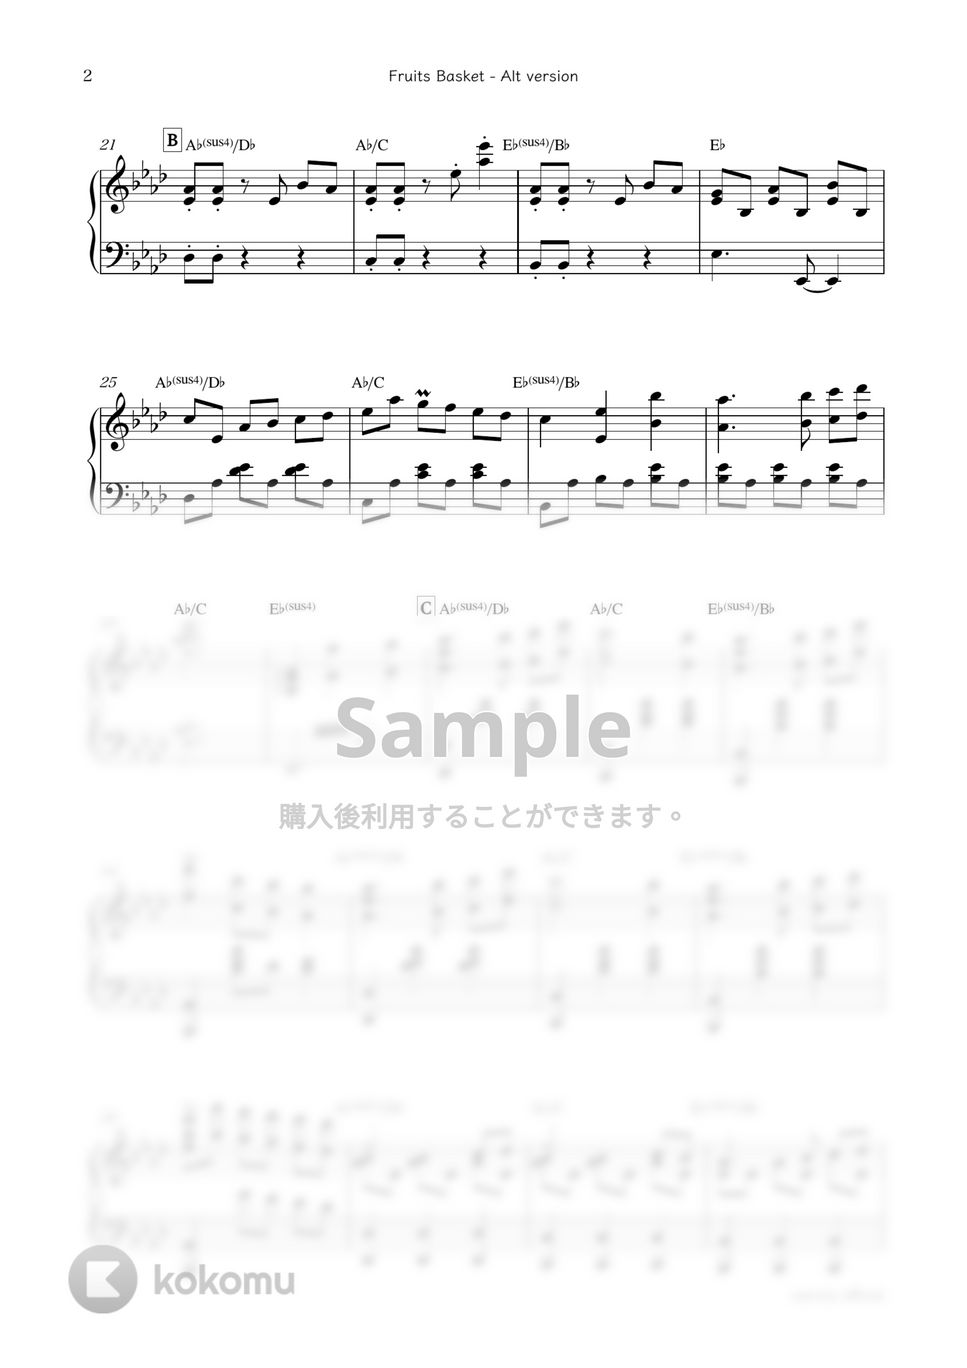 アニメ『フルーツバスケット』OST - Fruits Basket - Alt version by sammy